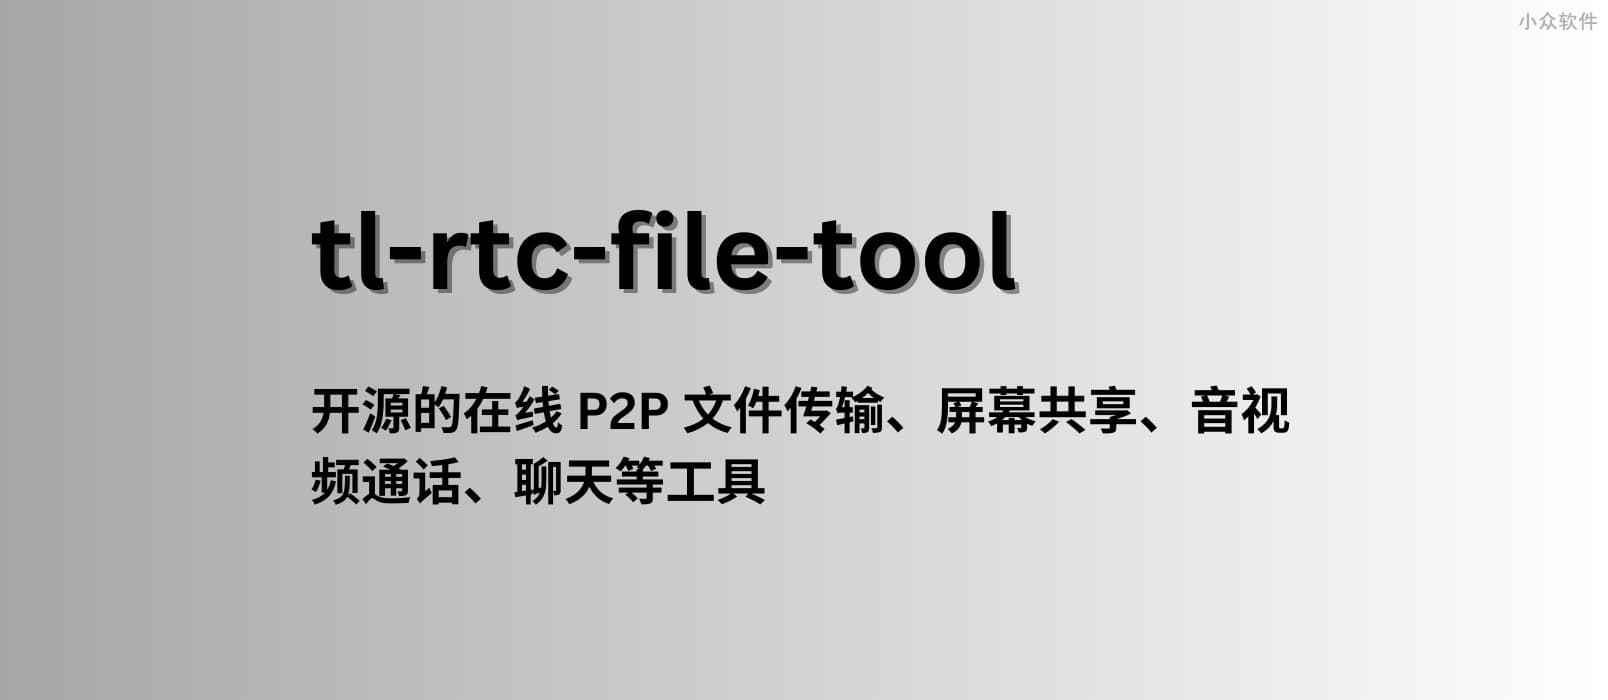 tl-rtc-file-tool – 一款开源的在线 P2P 文件传输、屏幕共享、音视频通话等工具 